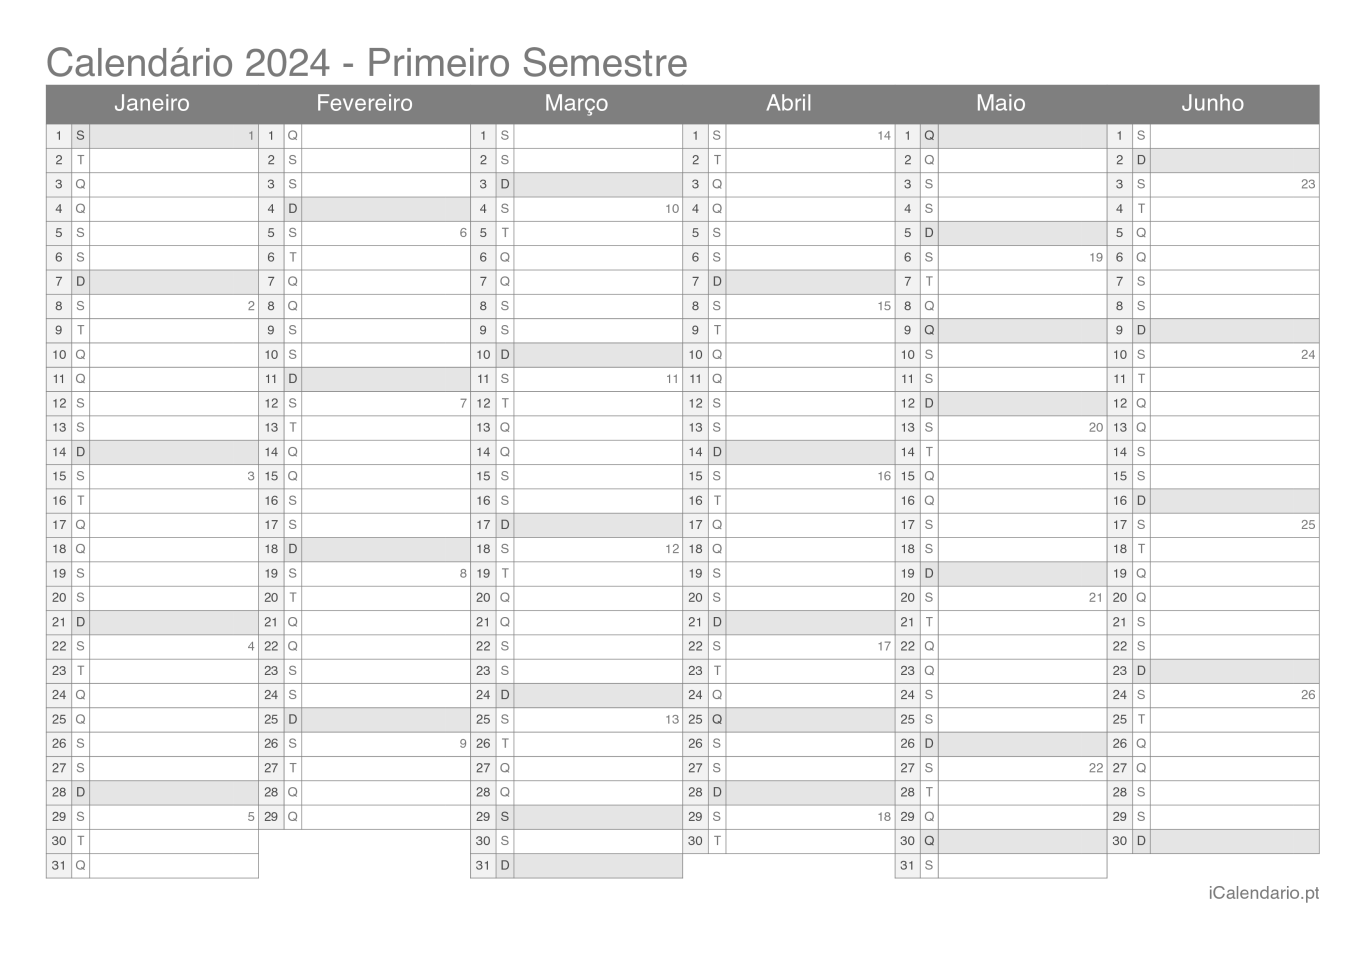 Calendário por semestre com números da semana 2024